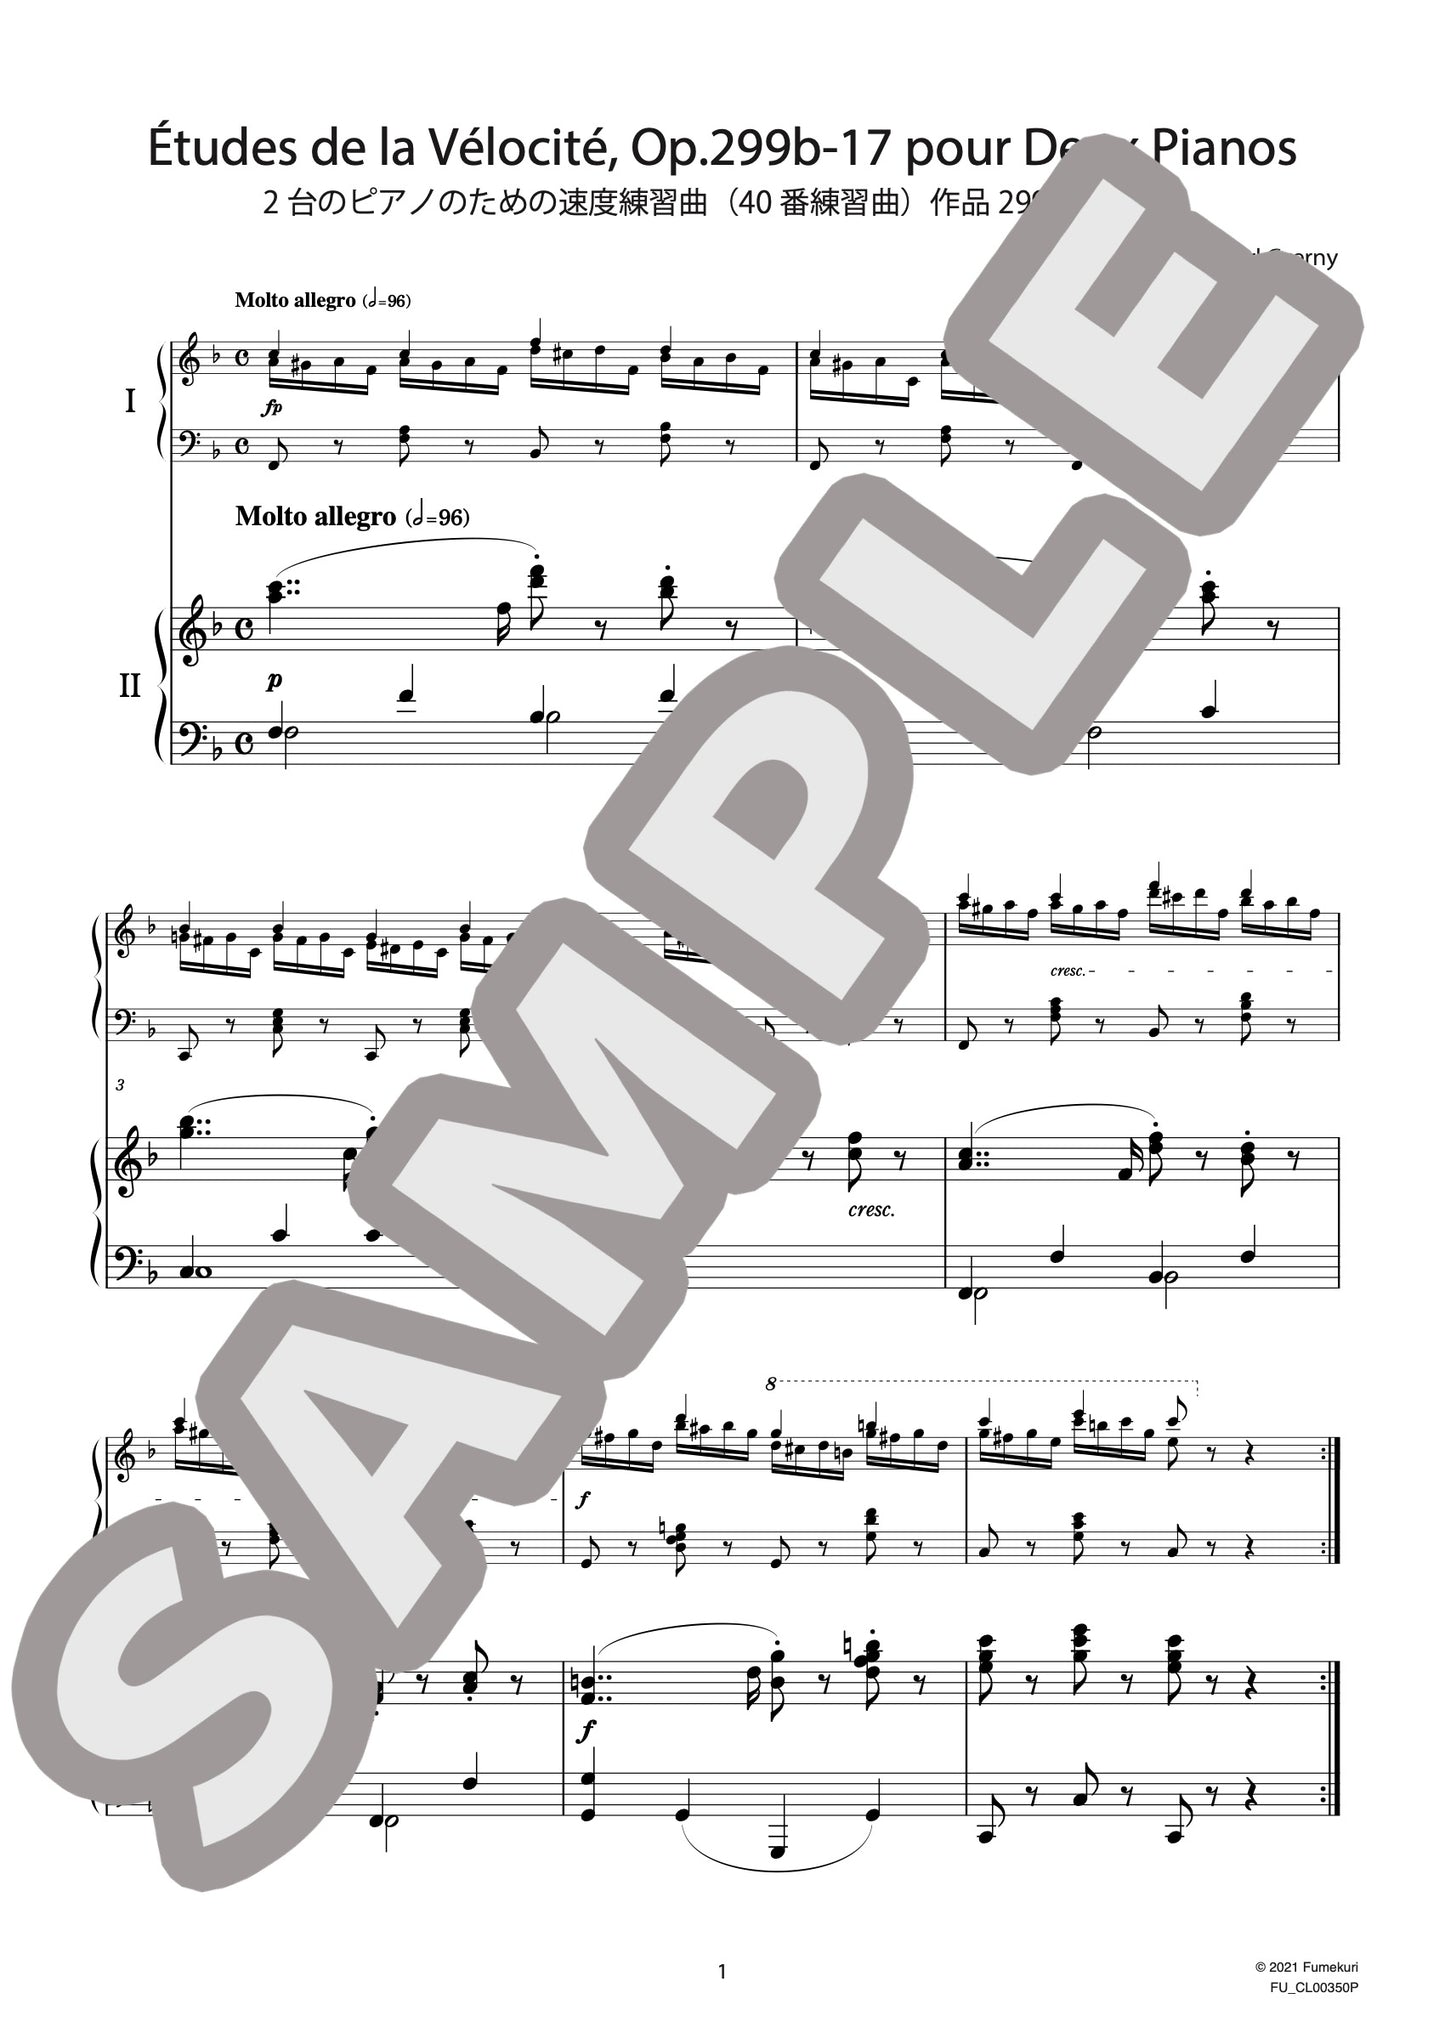 2台のピアノのための速度練習曲（40番練習曲）作品299b 第17番（CZERNY) / クラシック・オリジナル楽曲【中上級】